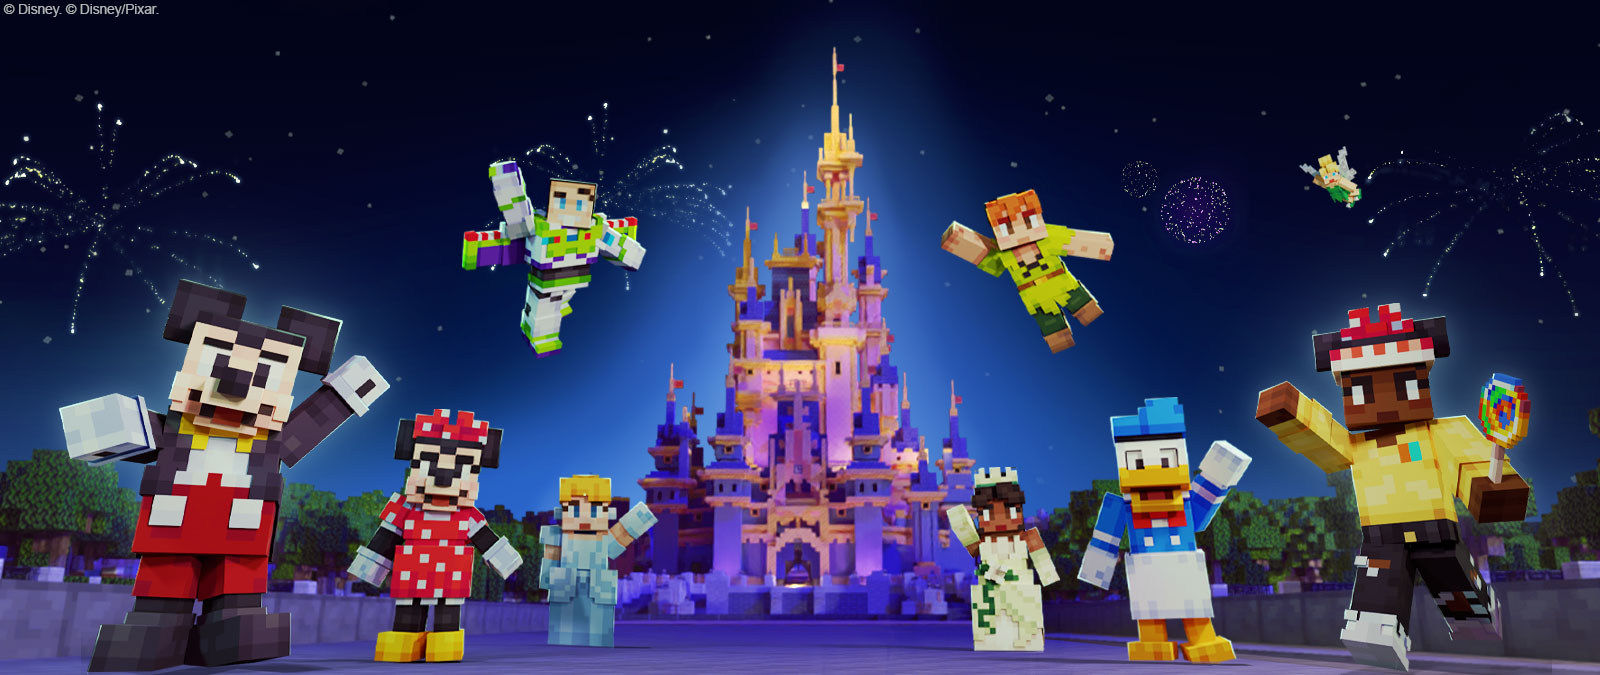 Mickey Mouse, Minnie Mouse, Buzz lʼÉclair, Cendrillon, Peter Pan, Tiana, Donald Duck, la fée Clochette et un autre personnage dans le style Minecraft se tiennent devant le château de Disney